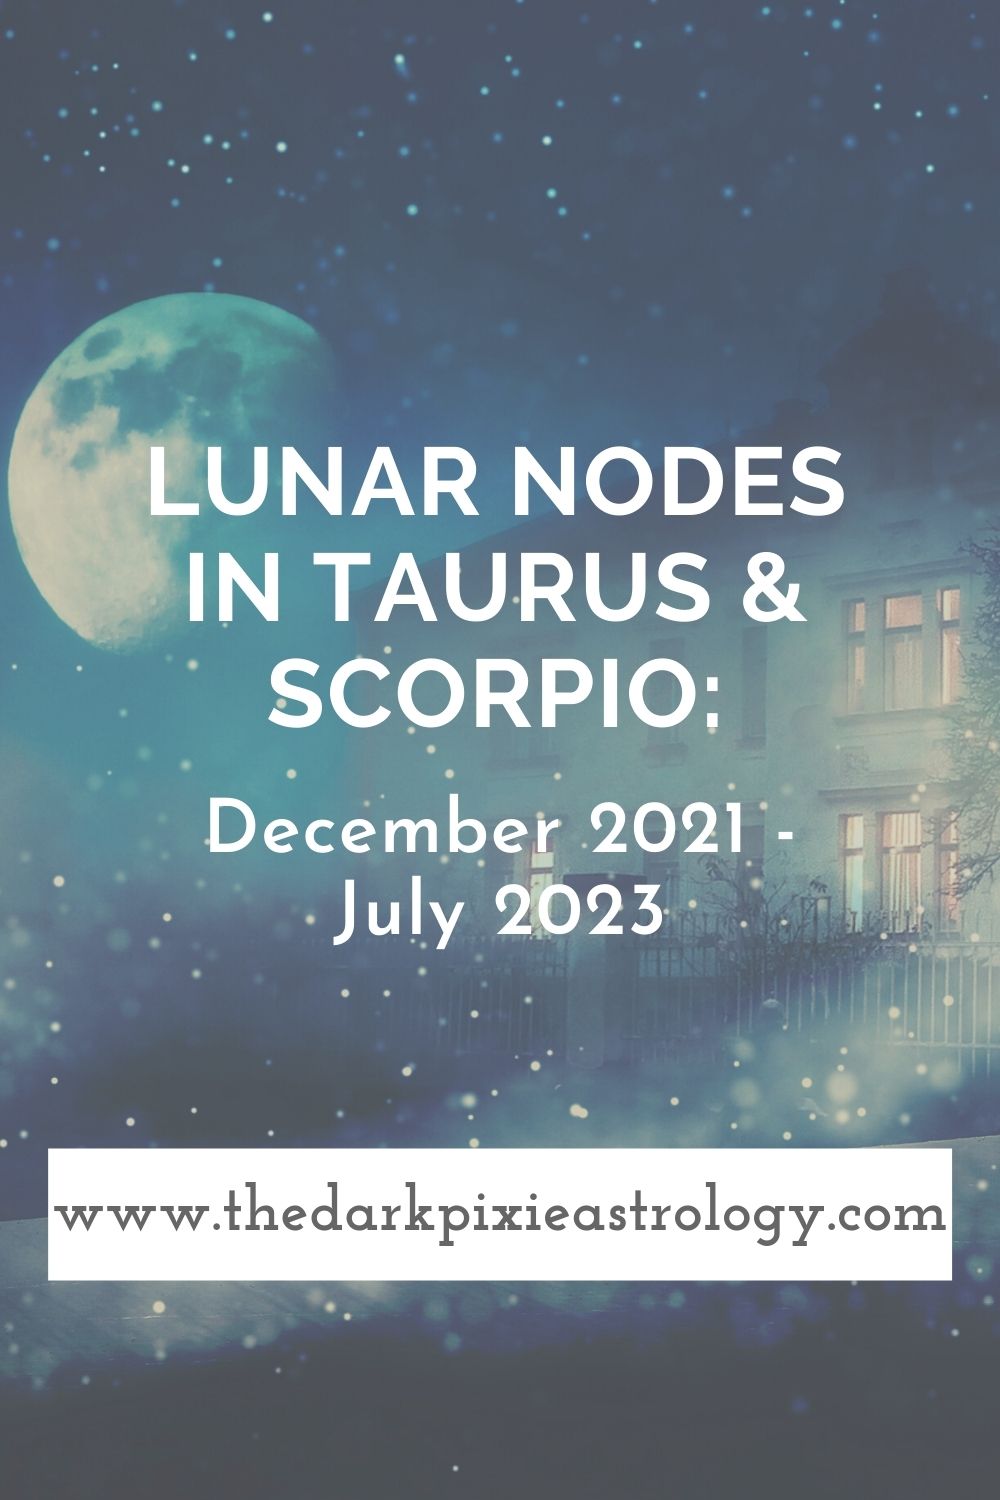 Lunar Nodes in Taurus & Scorpio: December 2021 - July 2023 - The Dark Pixie Astrology